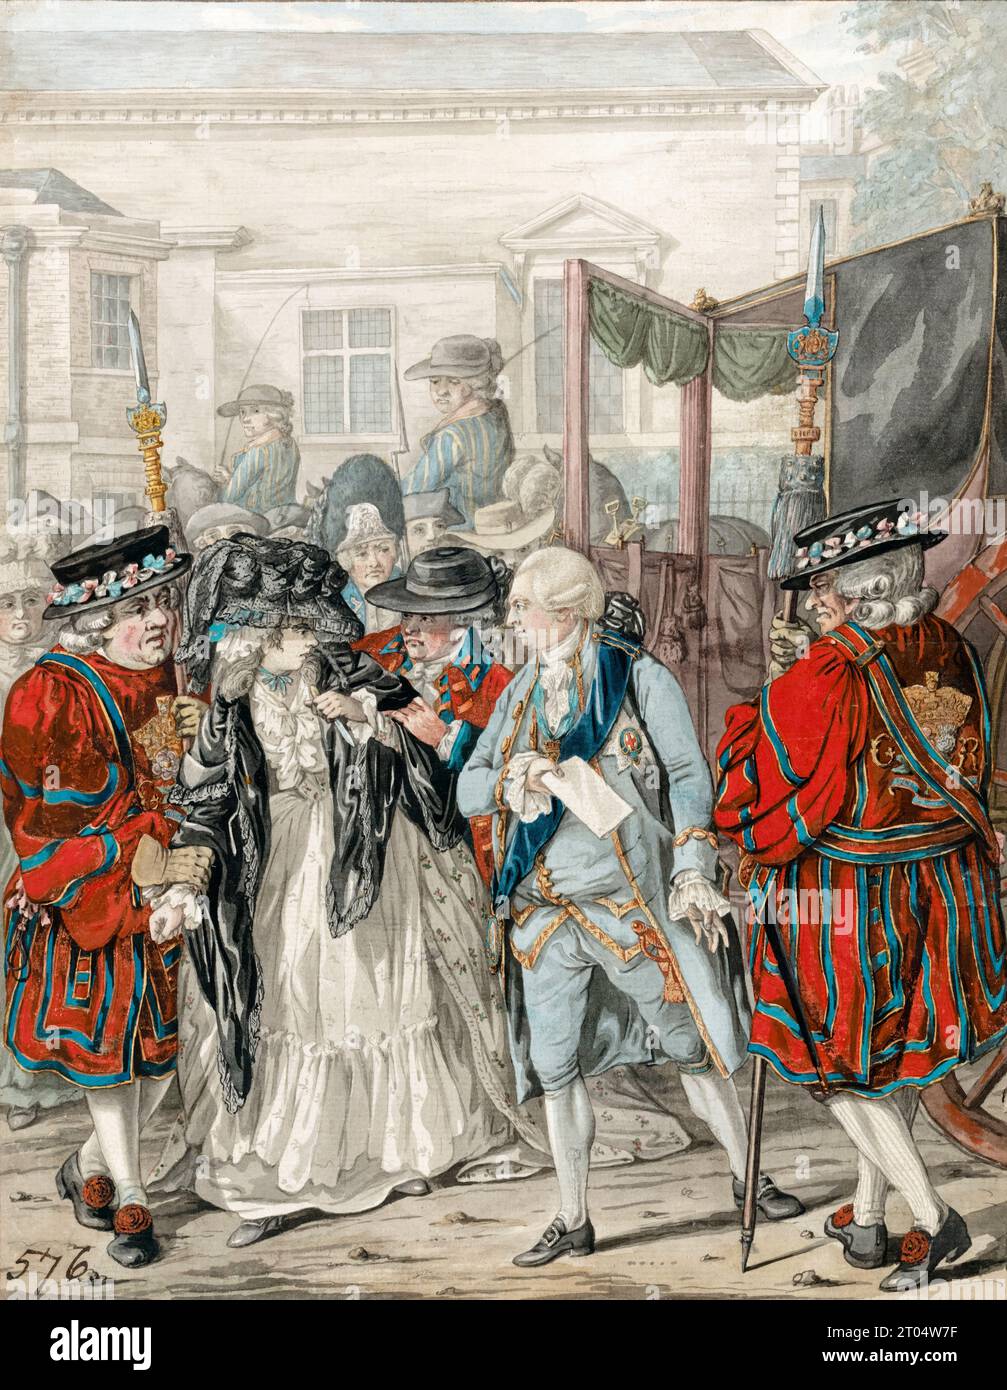 Margaret Nicholson versuchte, seine Majestät Georg III. Am Garden Entrance of St James’s Palace zu ermorden, 2. August 1786, Aquarellmalerei über Stift und Tinte von Robert Dighton, 1786 Stockfoto